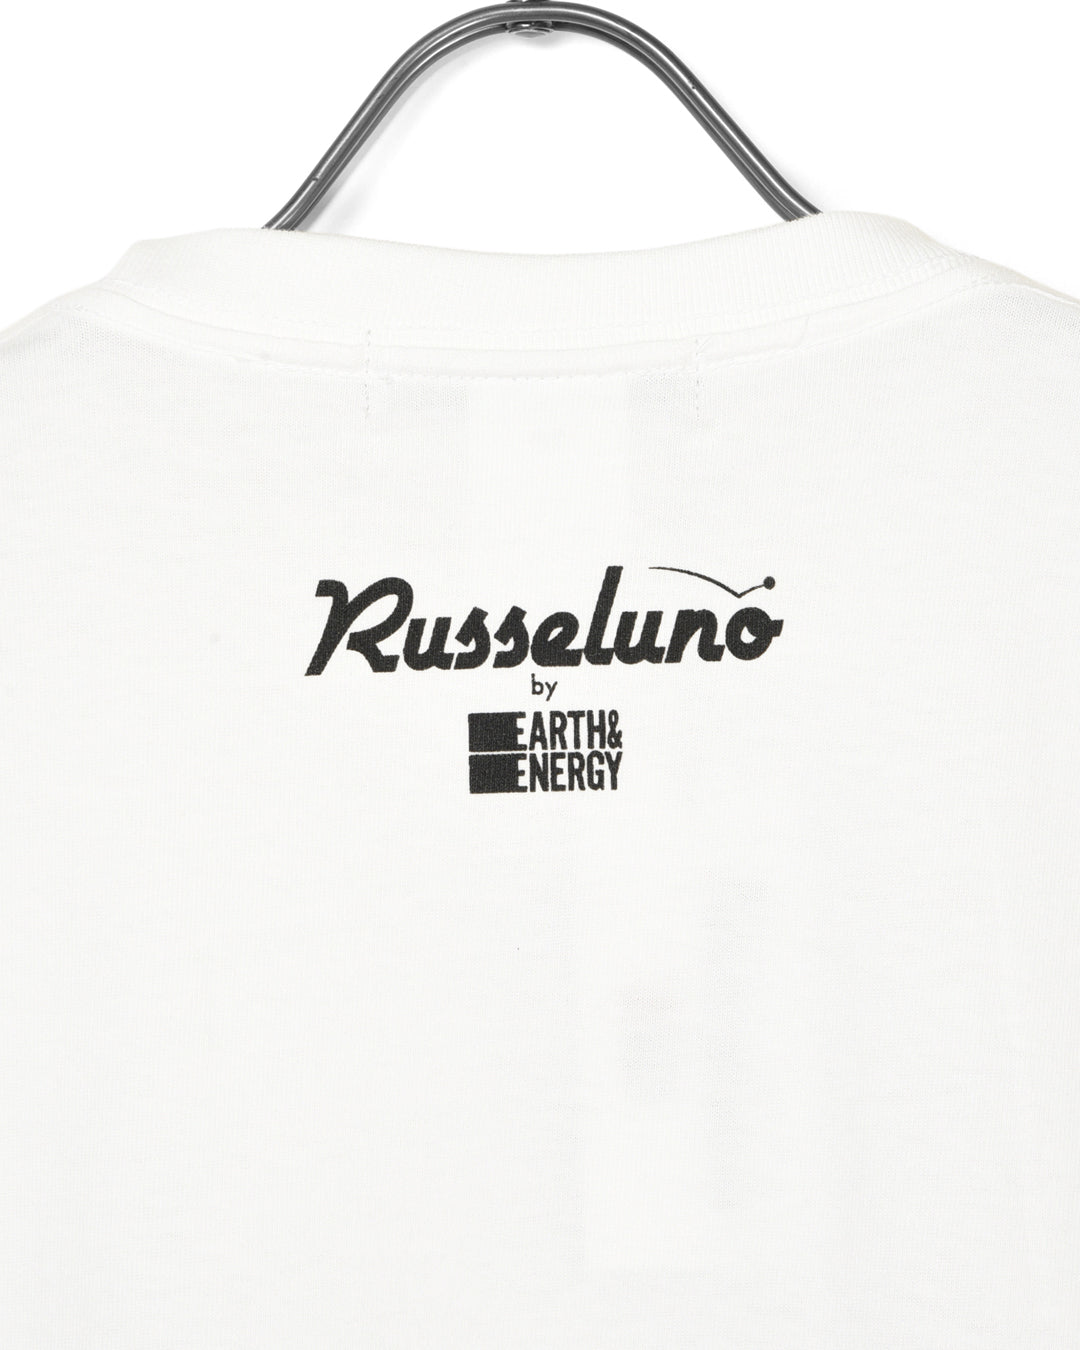 เสื้อยืด Russeluno จาก E&amp;E Yengiworks